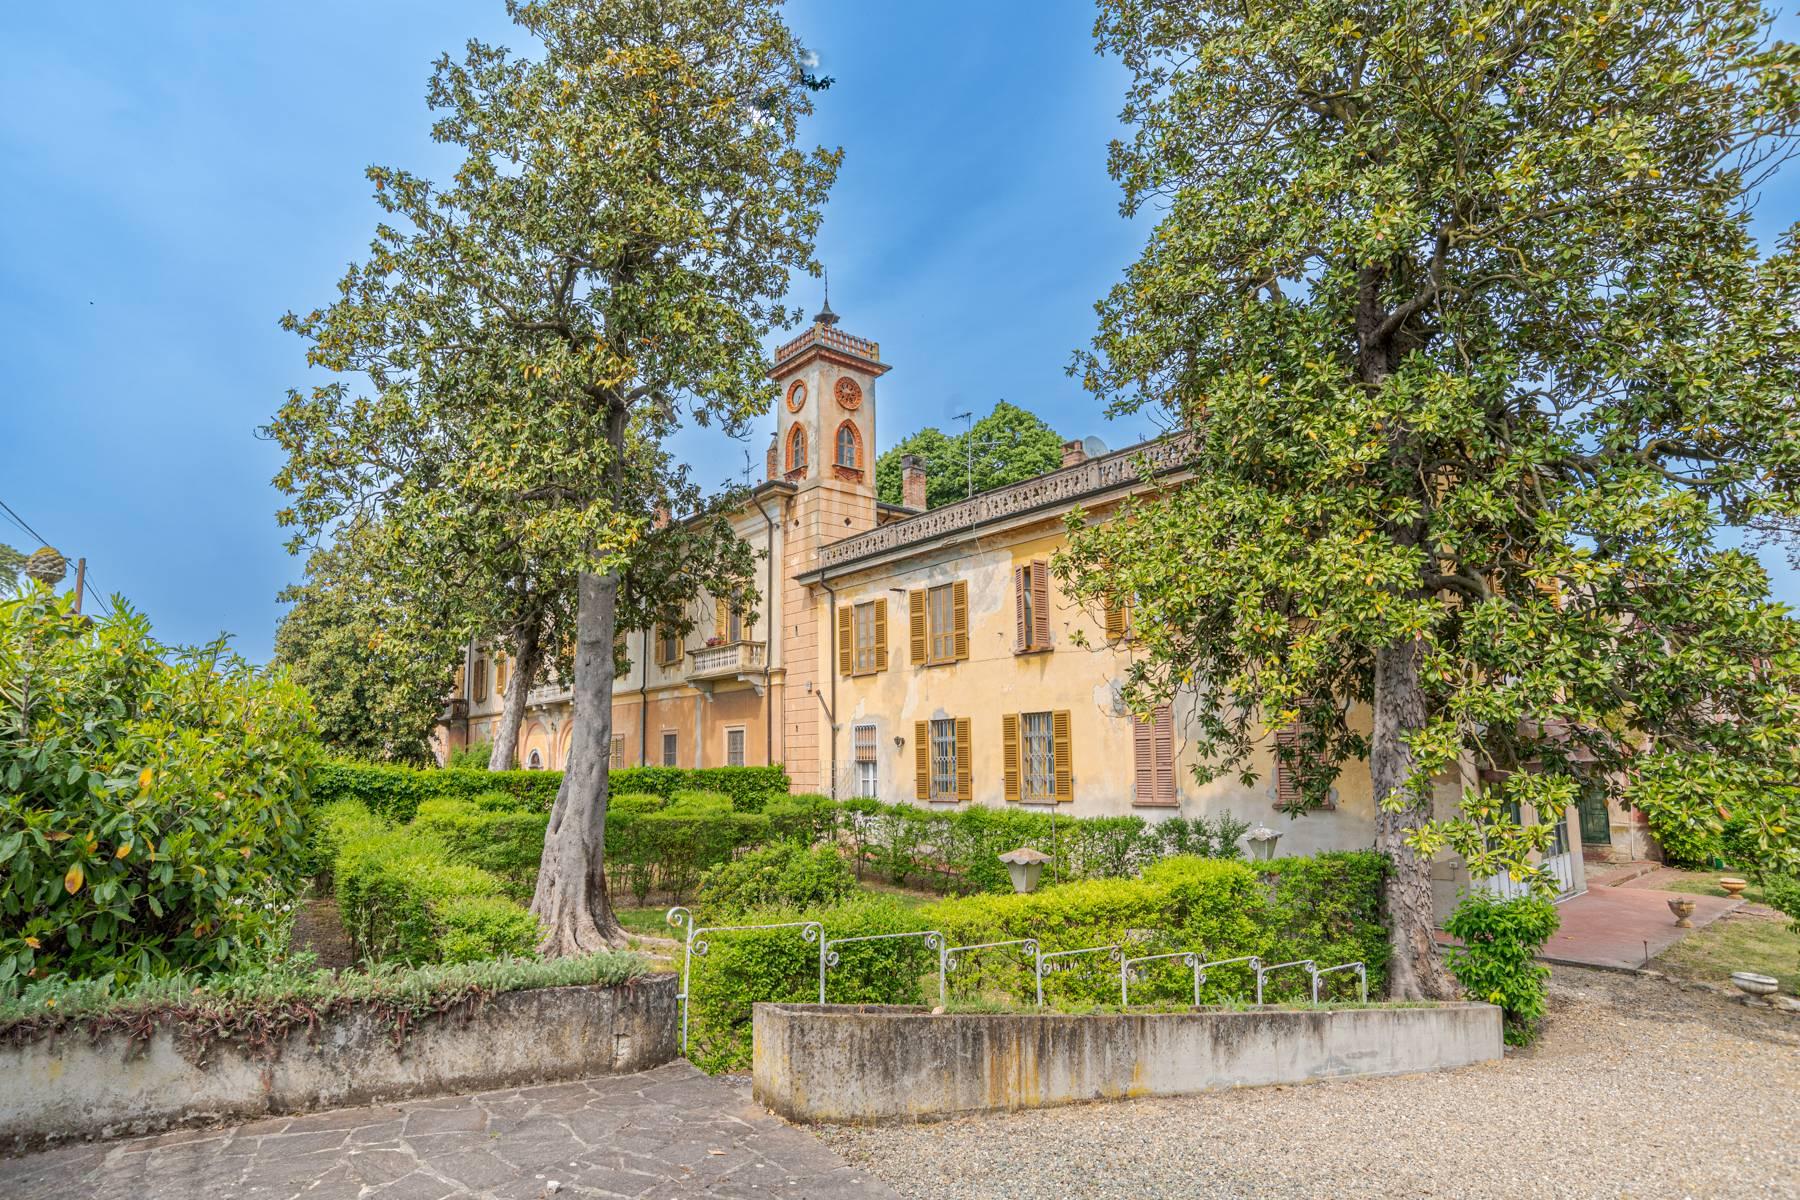 Cascina Bella - Villa del sec. XVIII con Parco nell'Oltrepò Pavese - 1